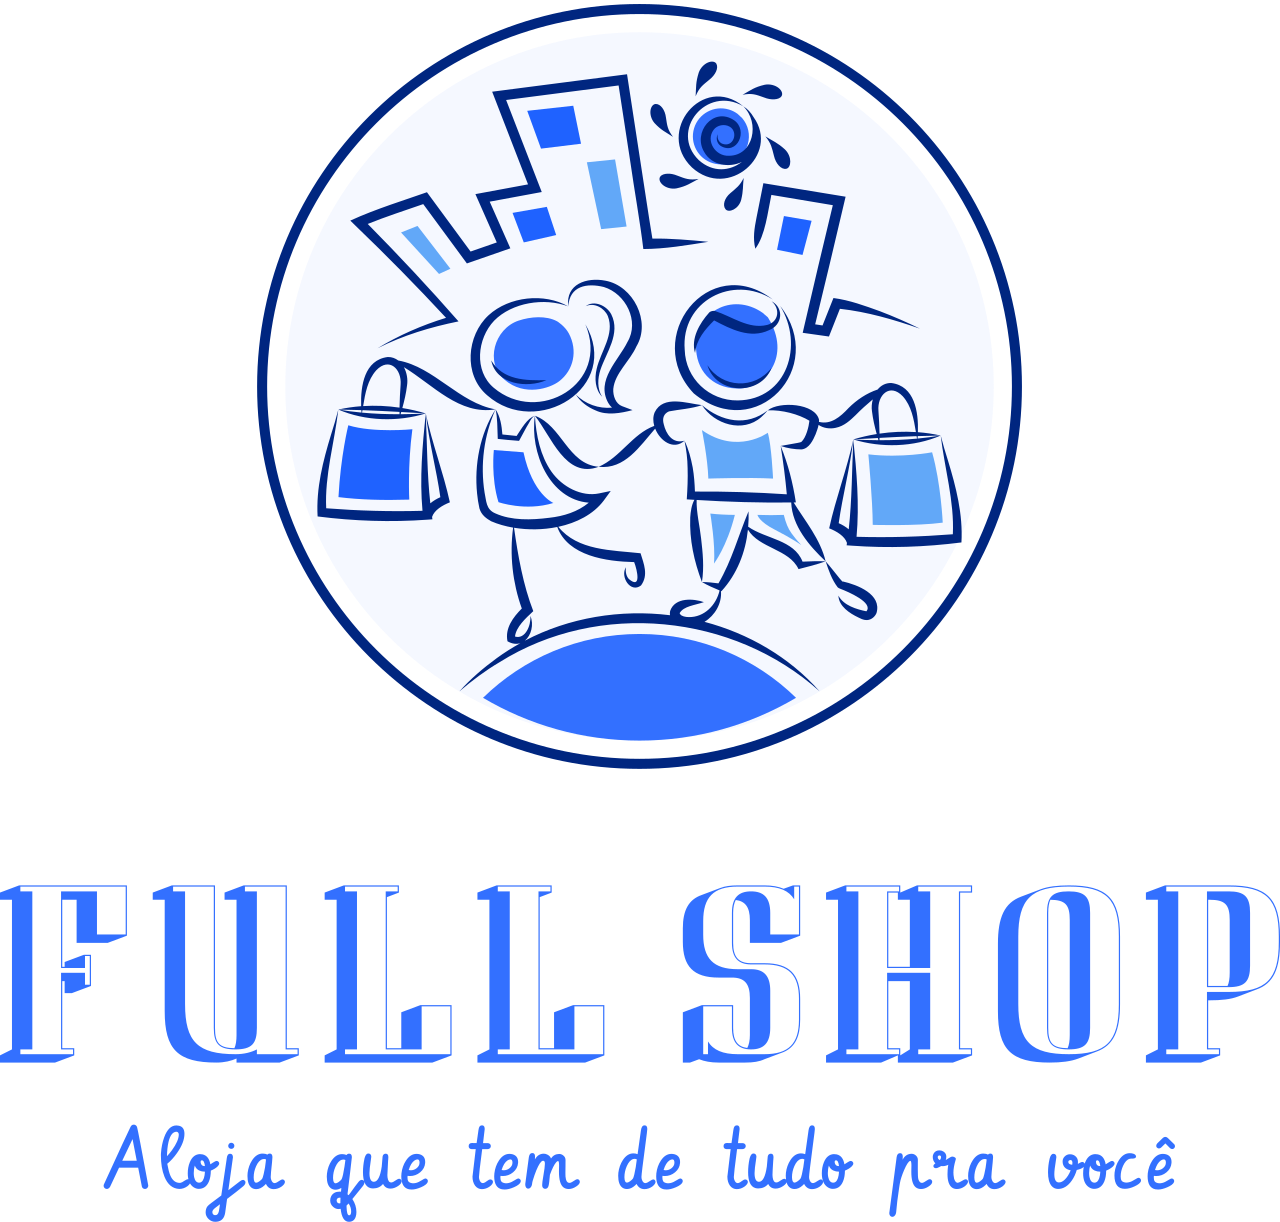 Full shop's logo